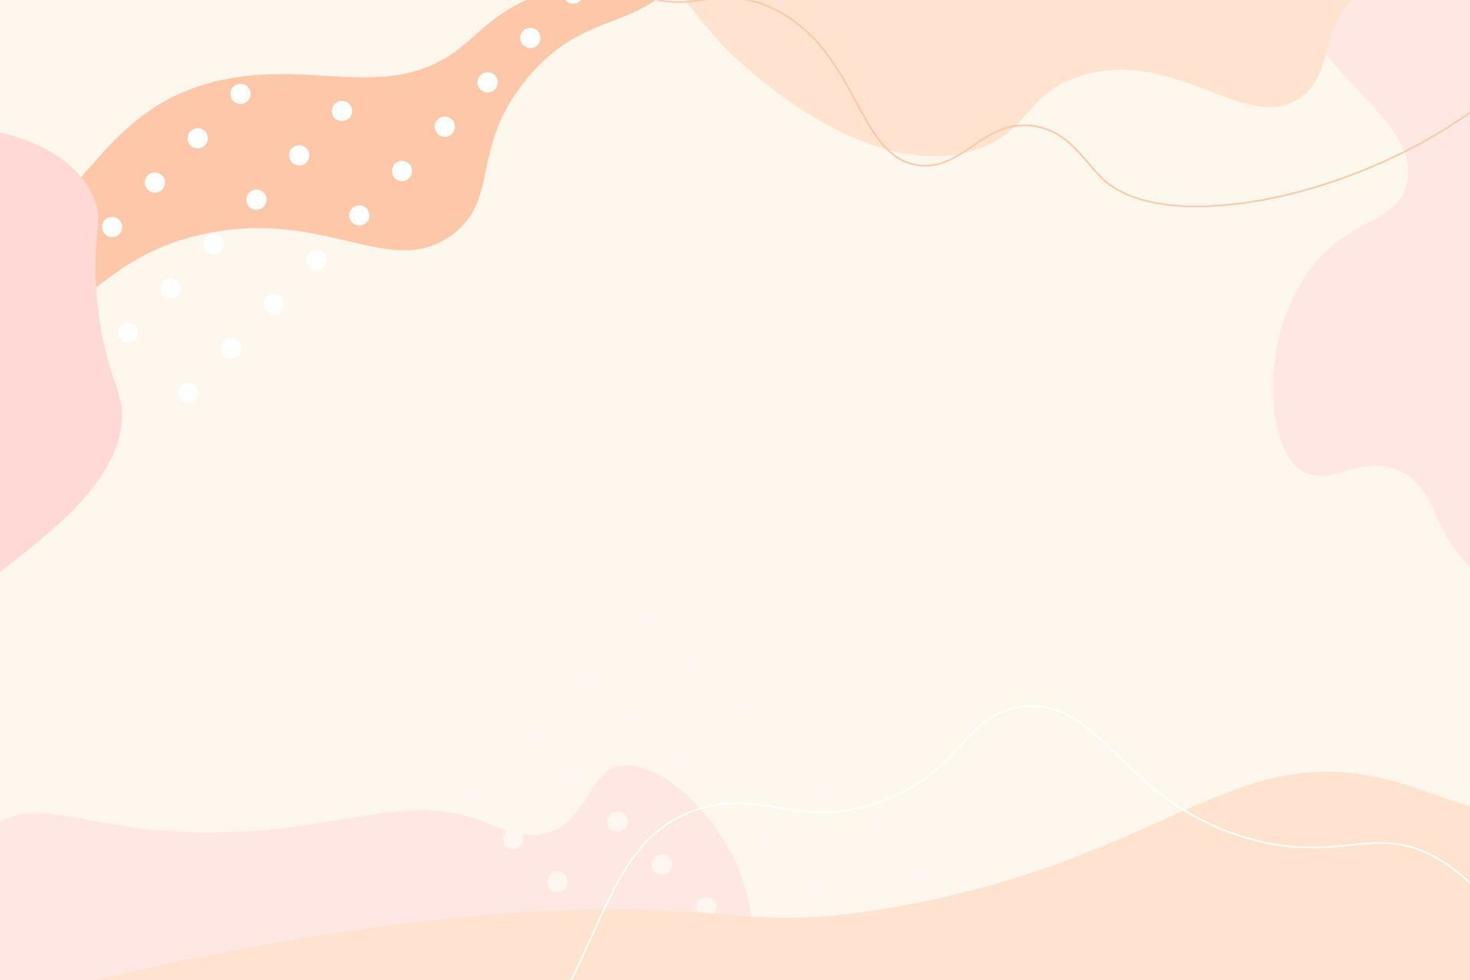 Plantillas estéticas y elegantes con formas orgánicas abstractas y líneas en colores nude. fondo pastel en estilo minimalista. ilustración vectorial contemporánea vector